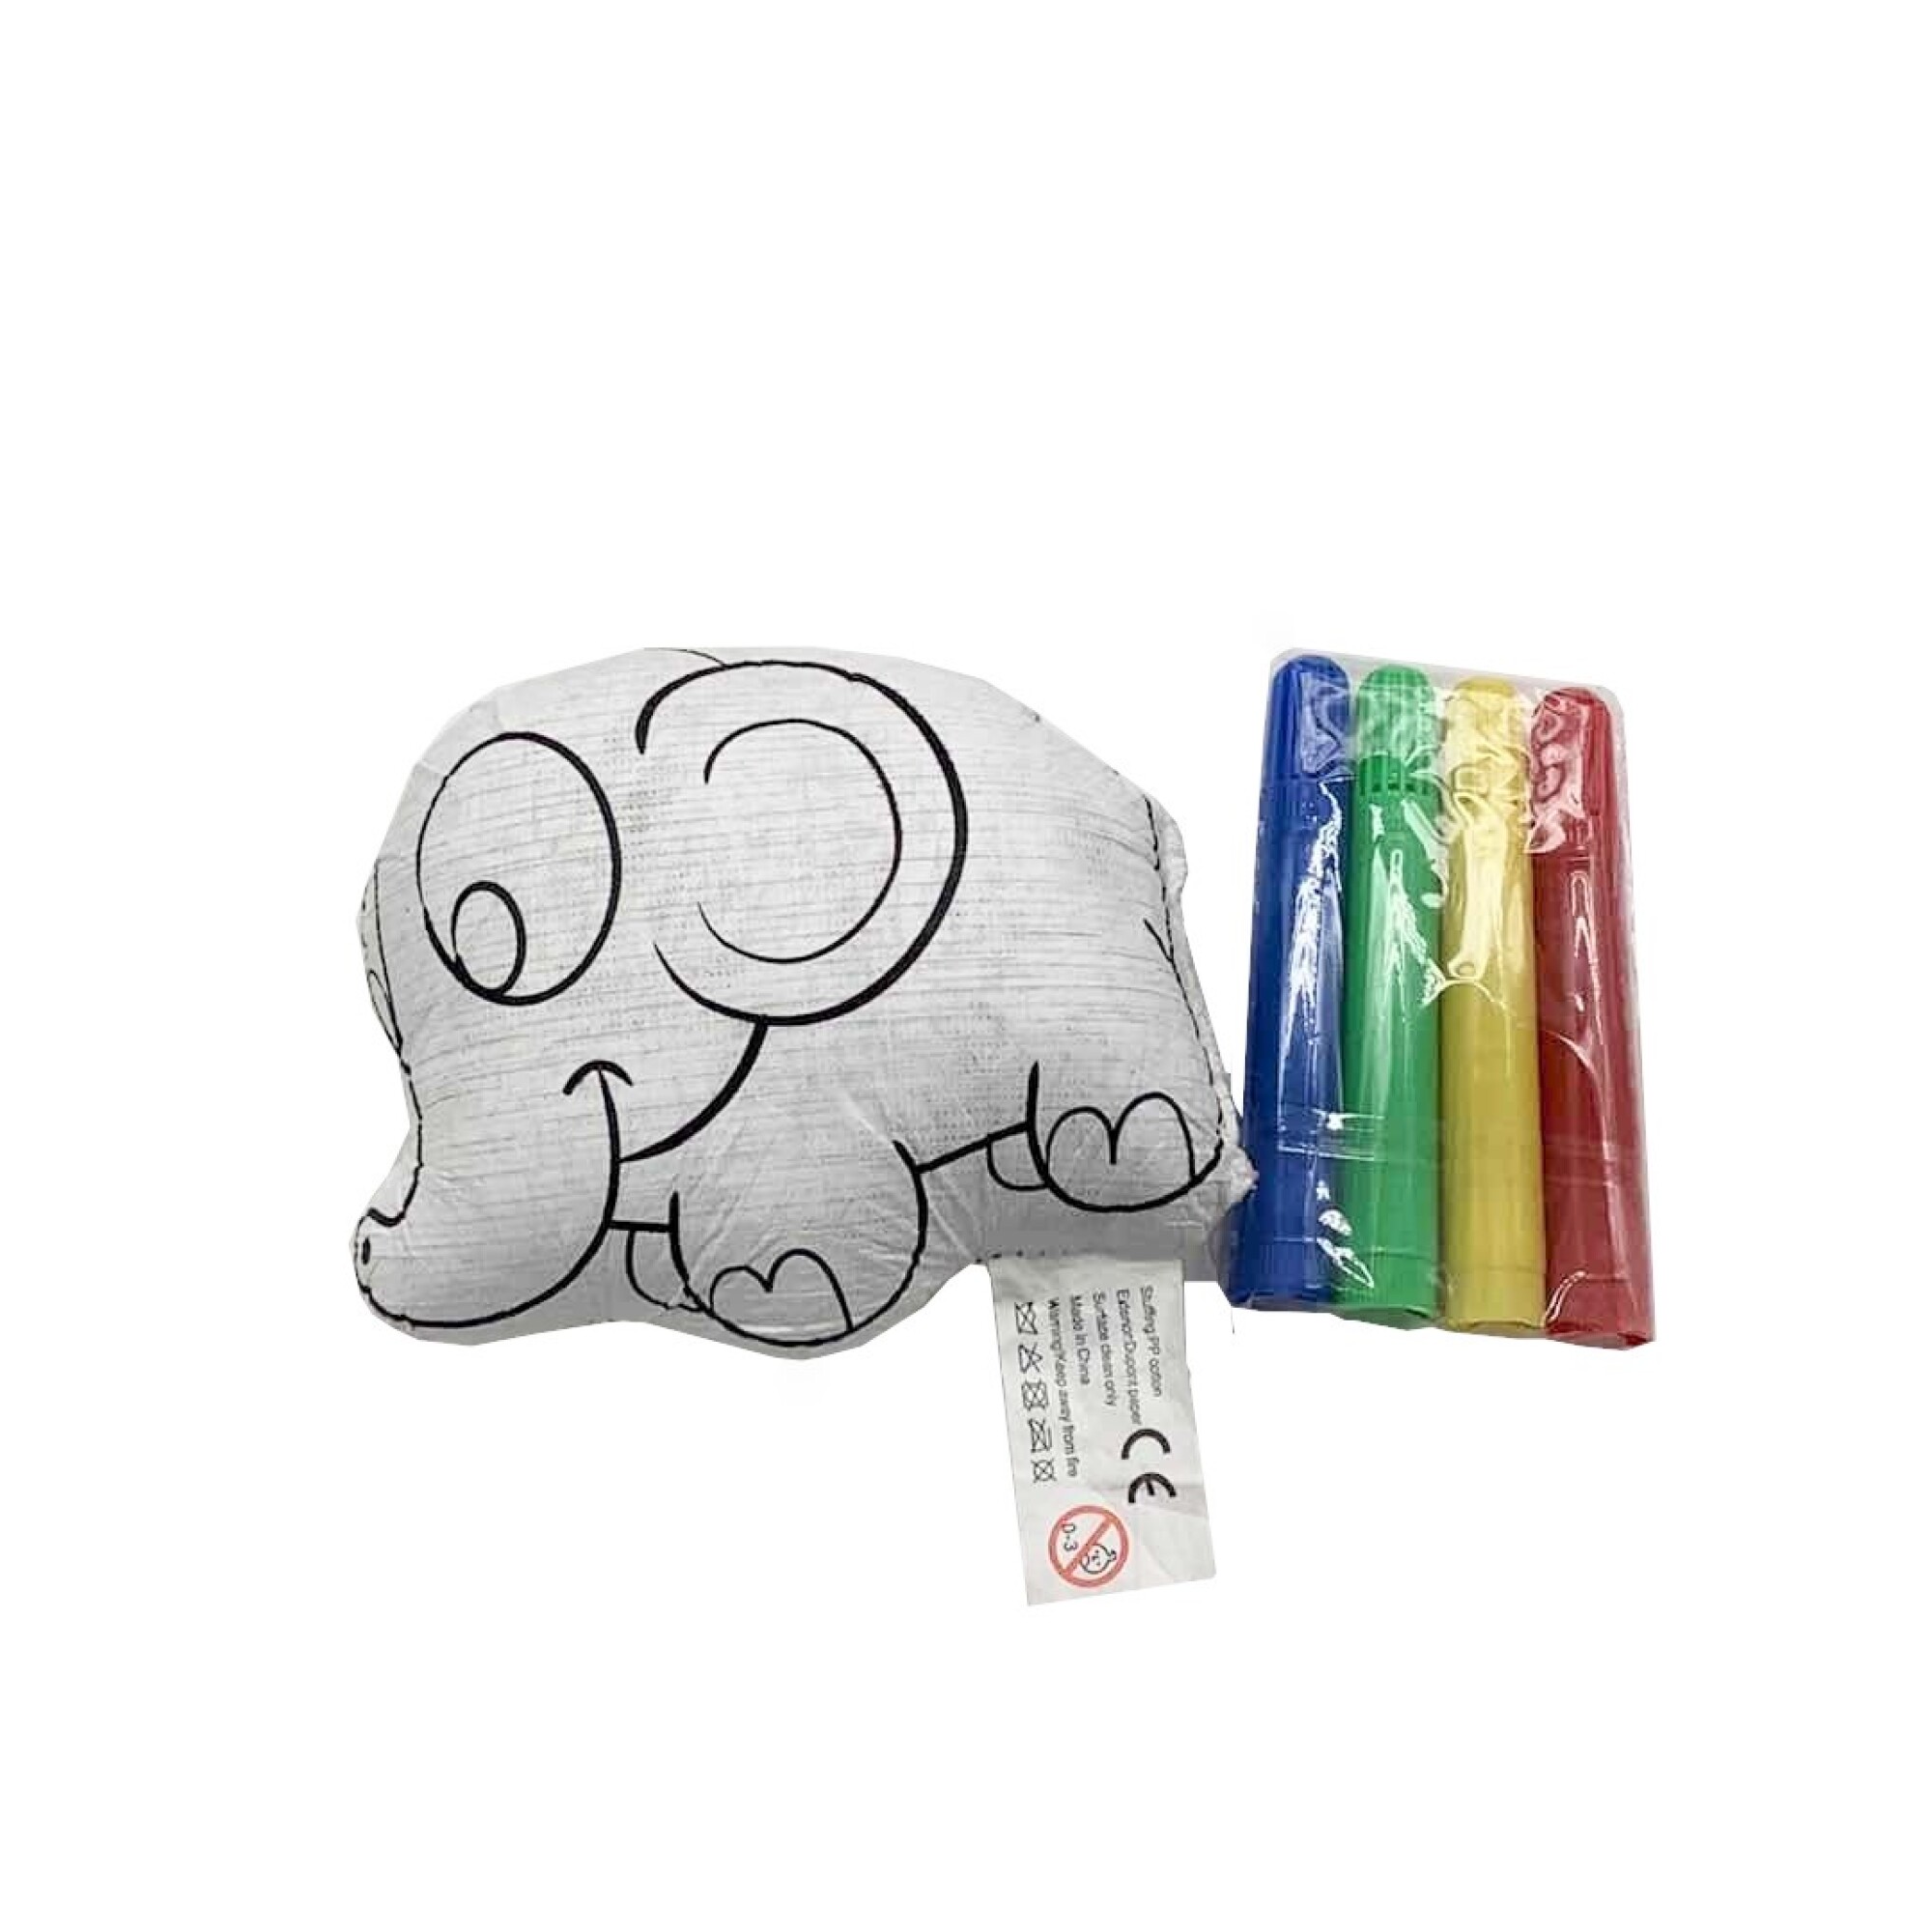 elefante para colorear